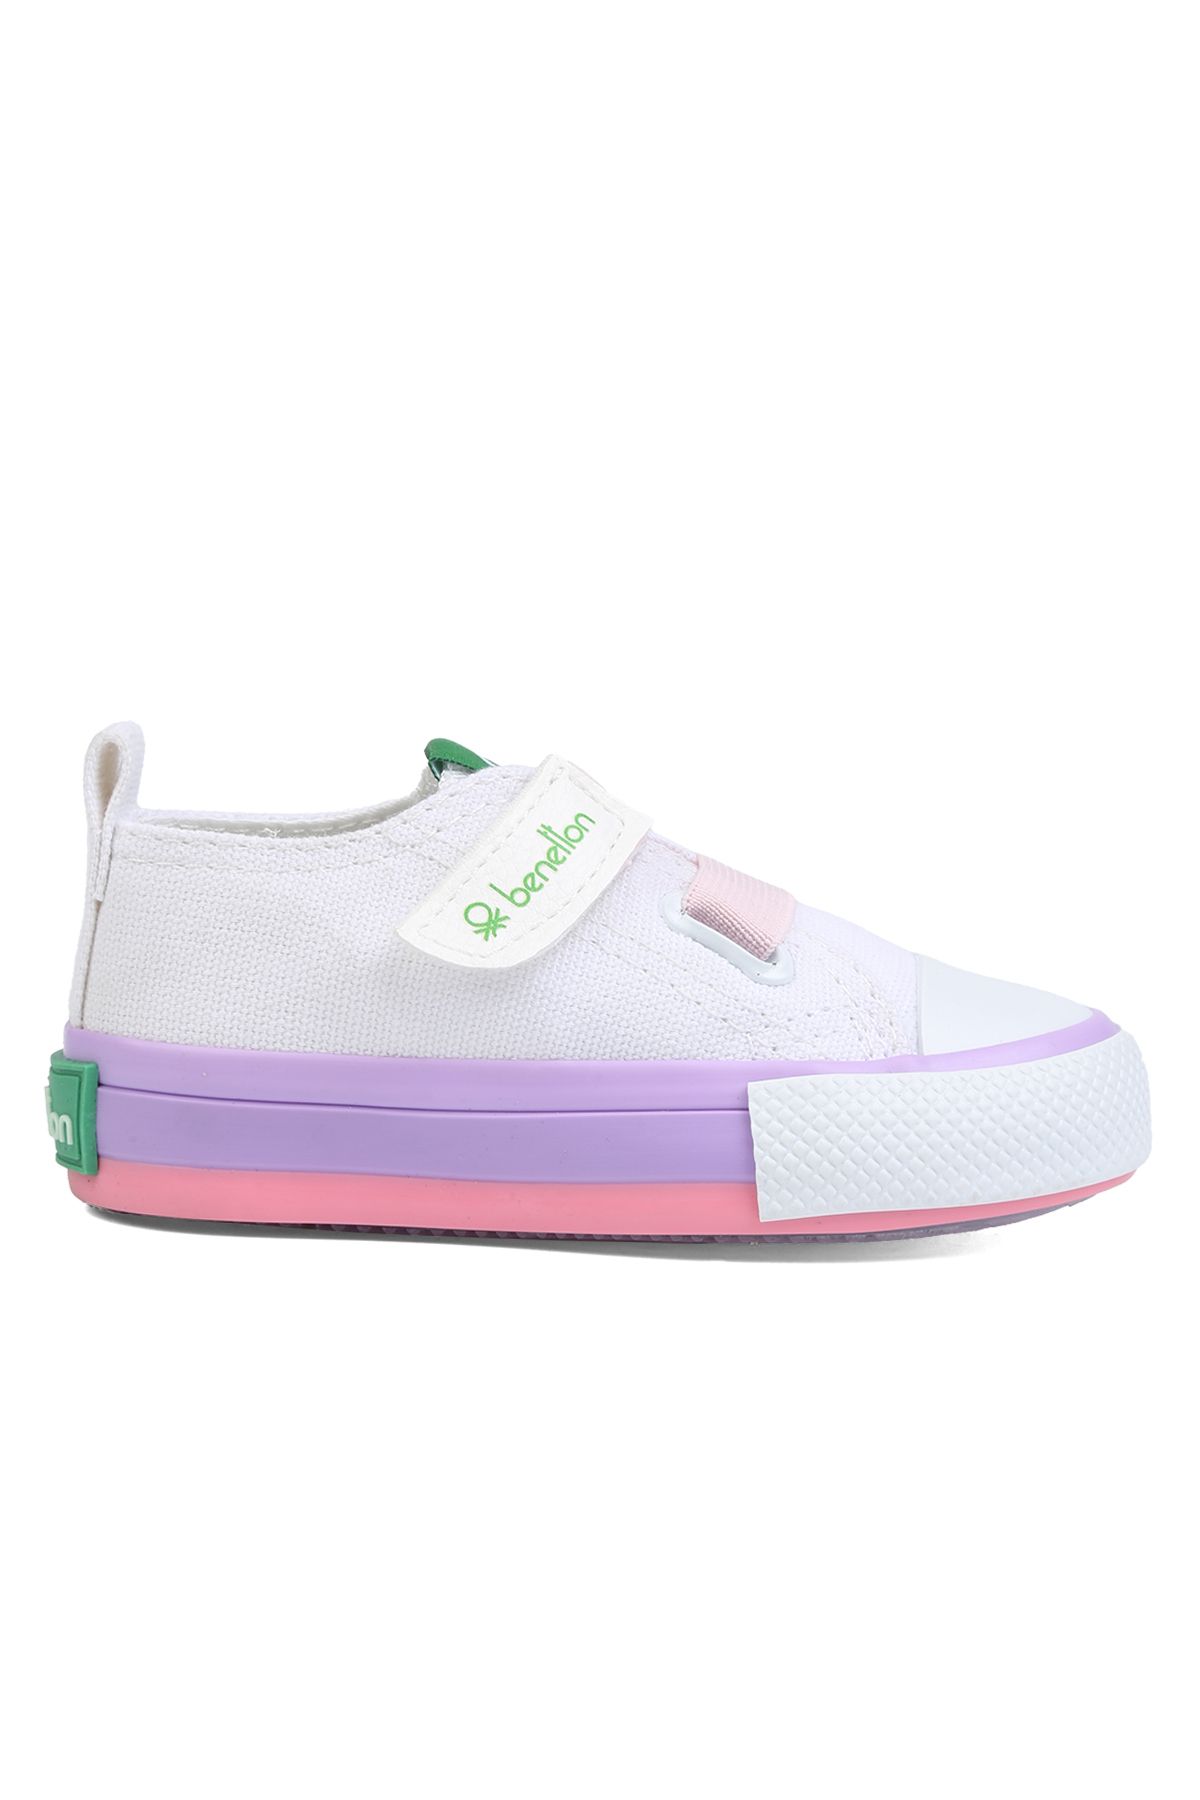 Benetton Beyaz - Pembe Bebek Yürüyüş Ayakkabısı BN-30648 177-Beyaz-Pembe